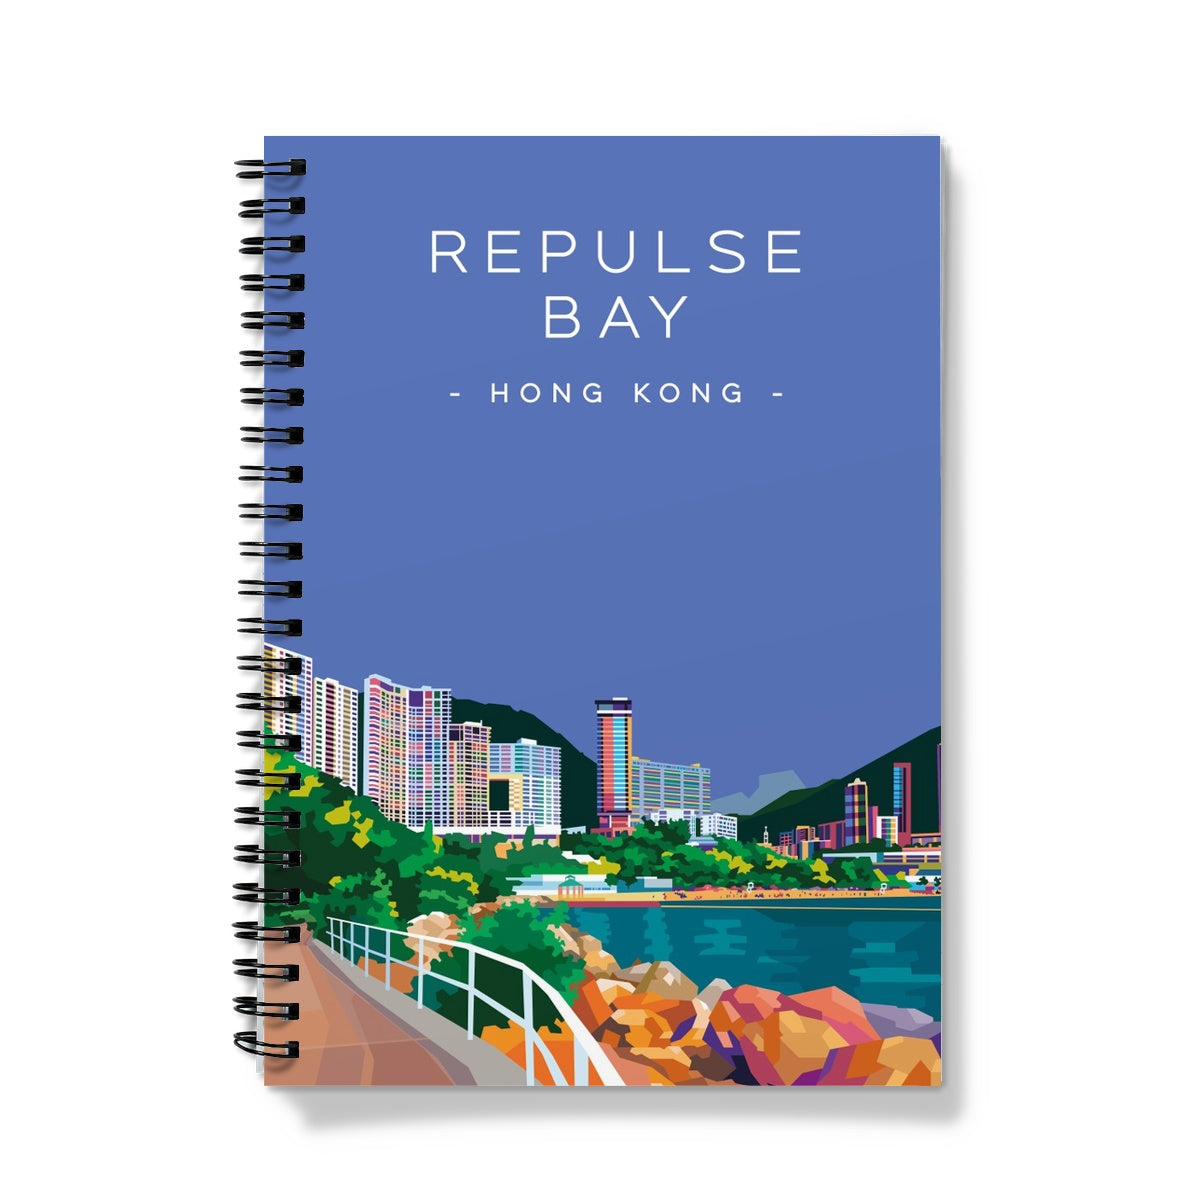 Hong Kong Travel - Repulse Bay Notebook